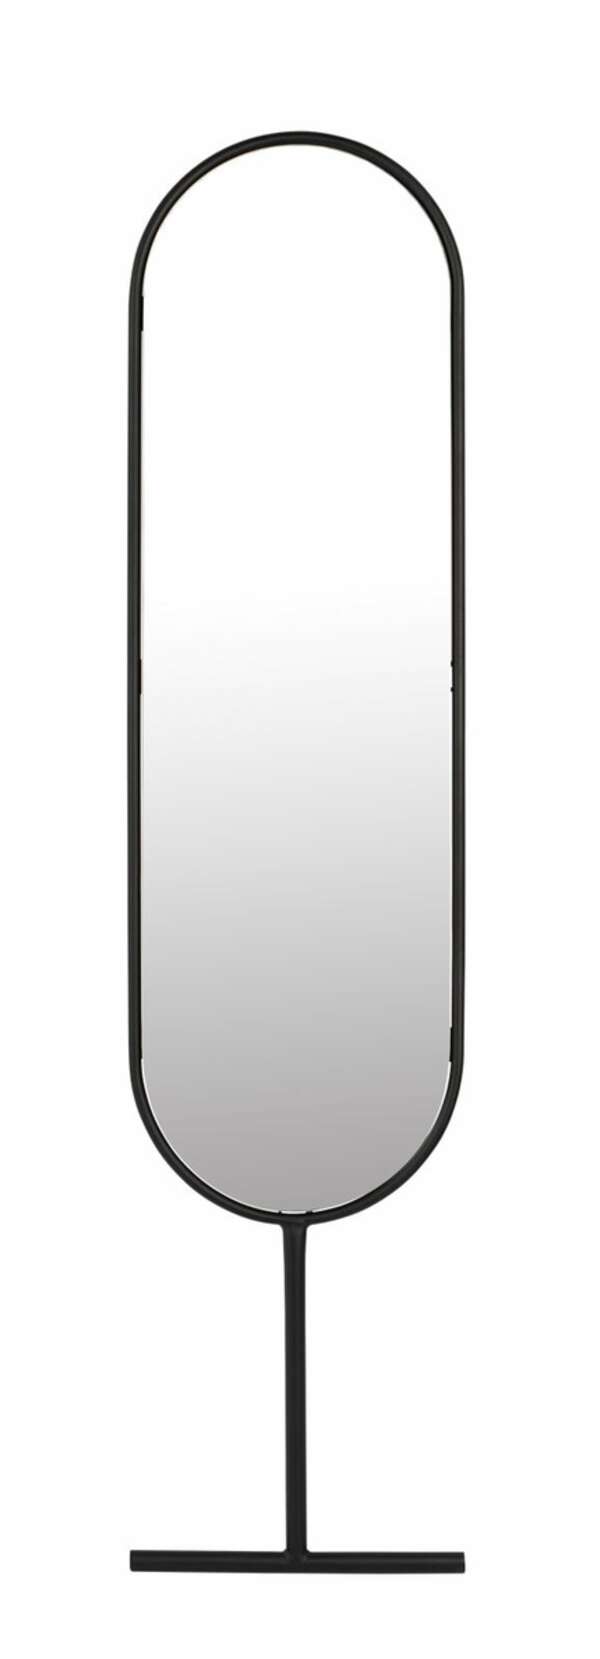 Bild 1 von zuiver Spiegel TESS 165 cm Stahlrahmen schwarz